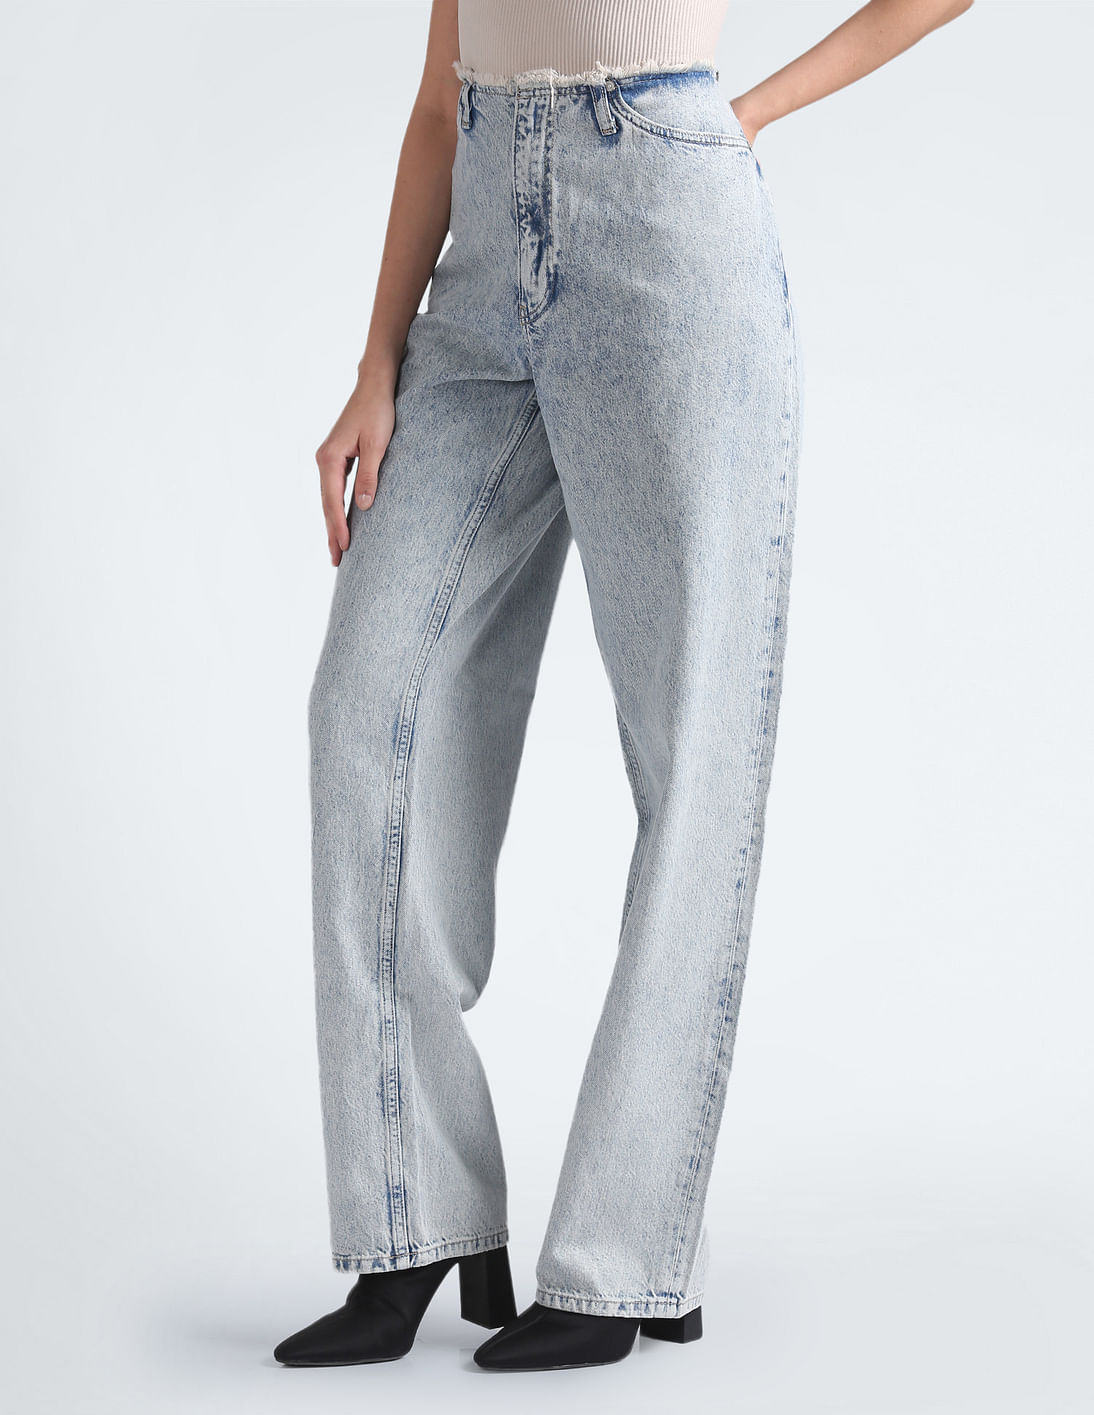 Buy Calvin Klein 90s Straight Fit Cut Waistband Jeans - NNNOW.com